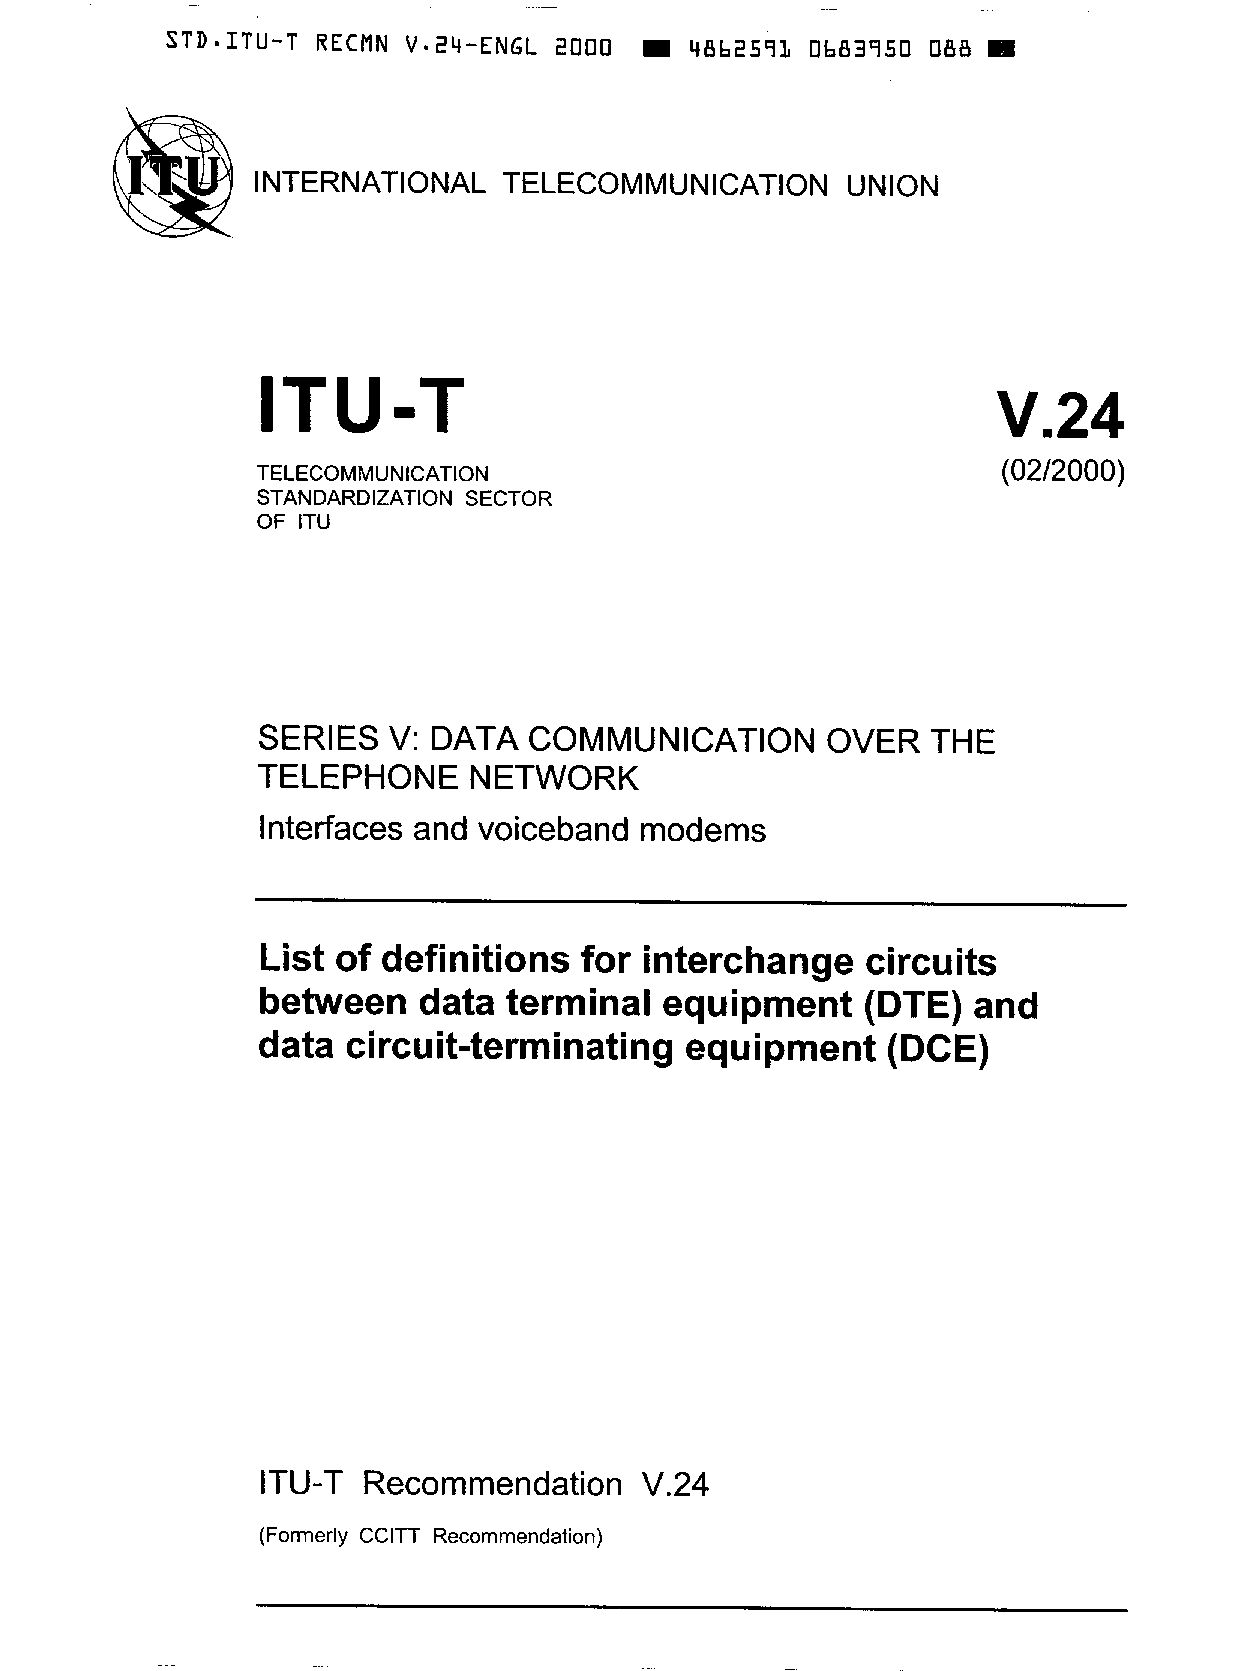 ITU-T V.24-2000